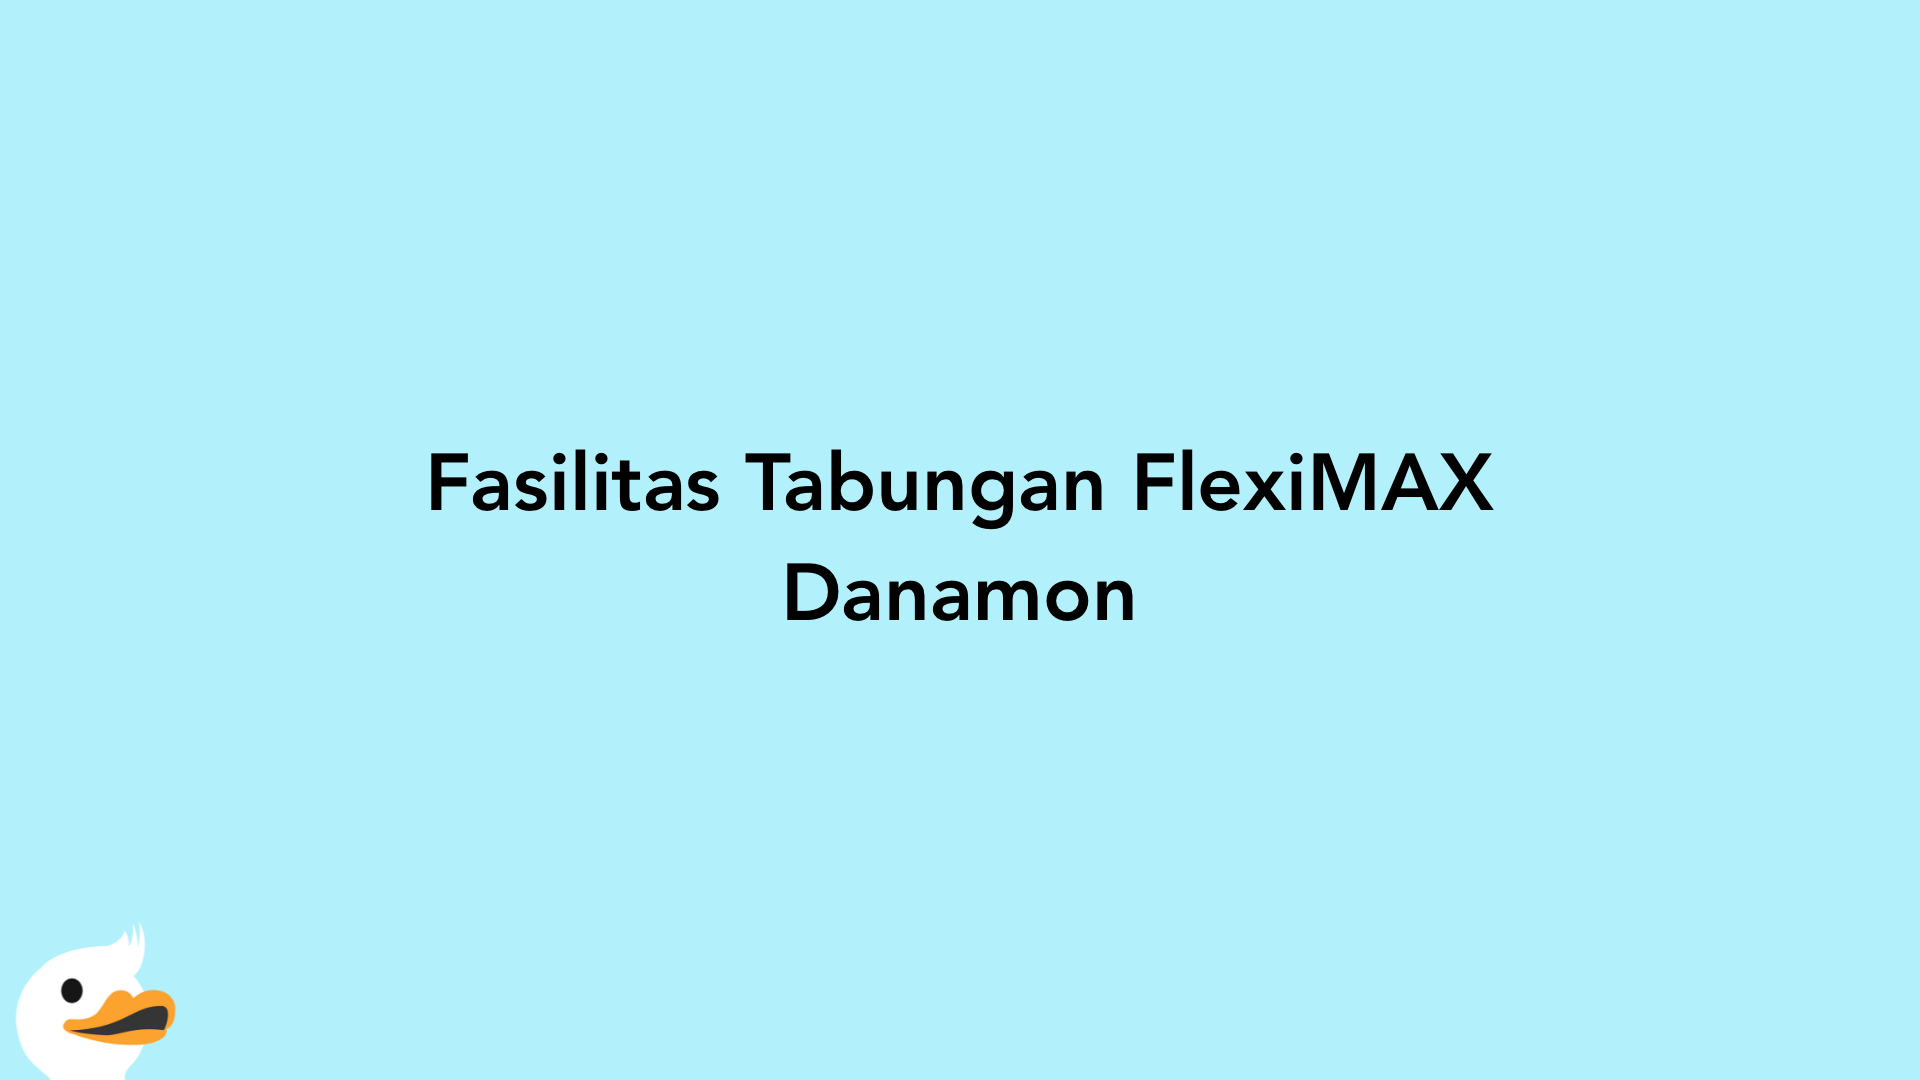 Fasilitas Tabungan FlexiMAX Danamon